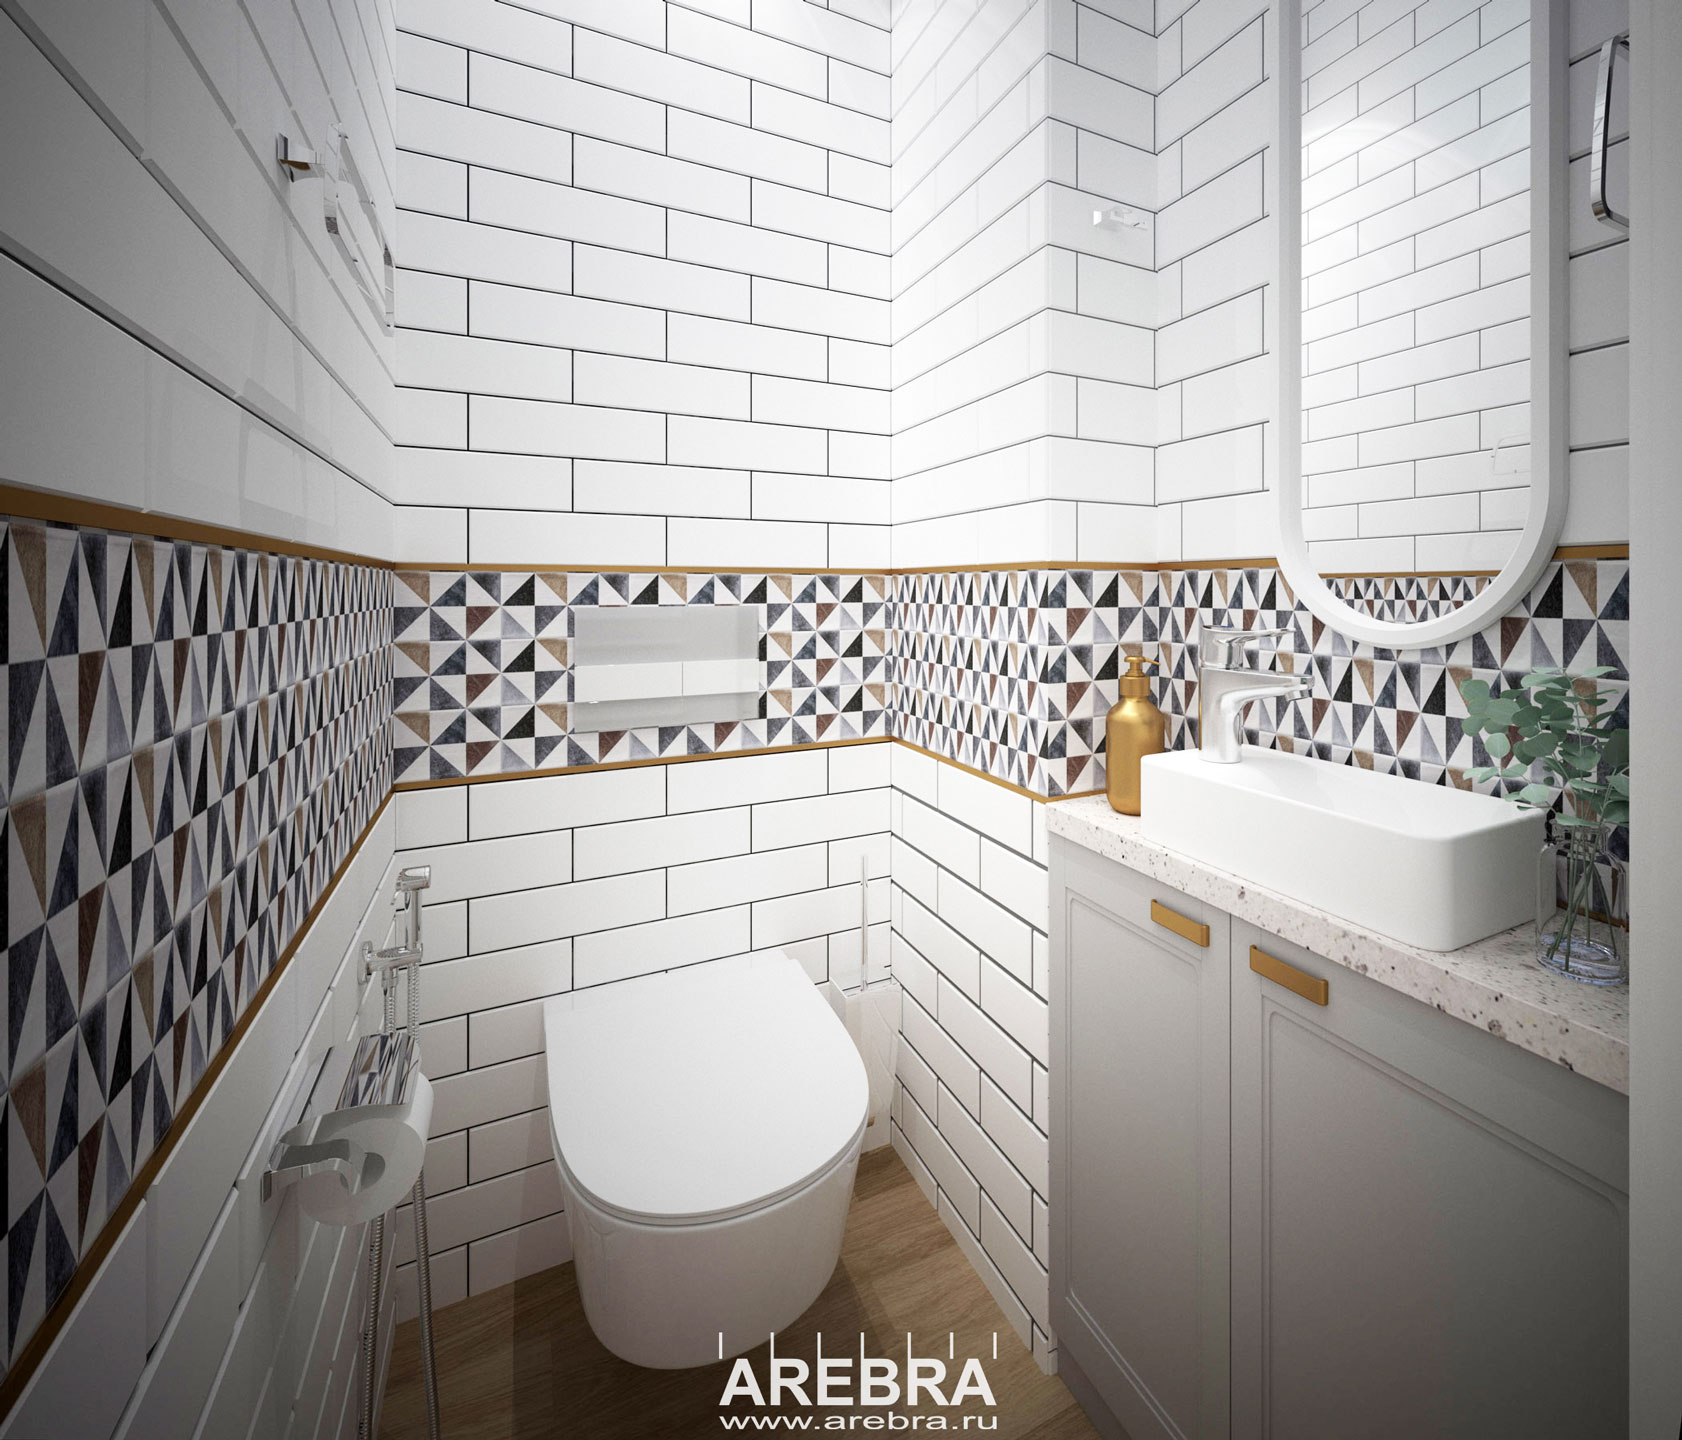 Дизайн проект части квартиры в Москве, Старые Химки. Проект кухни, туалета и ванной комнаты.